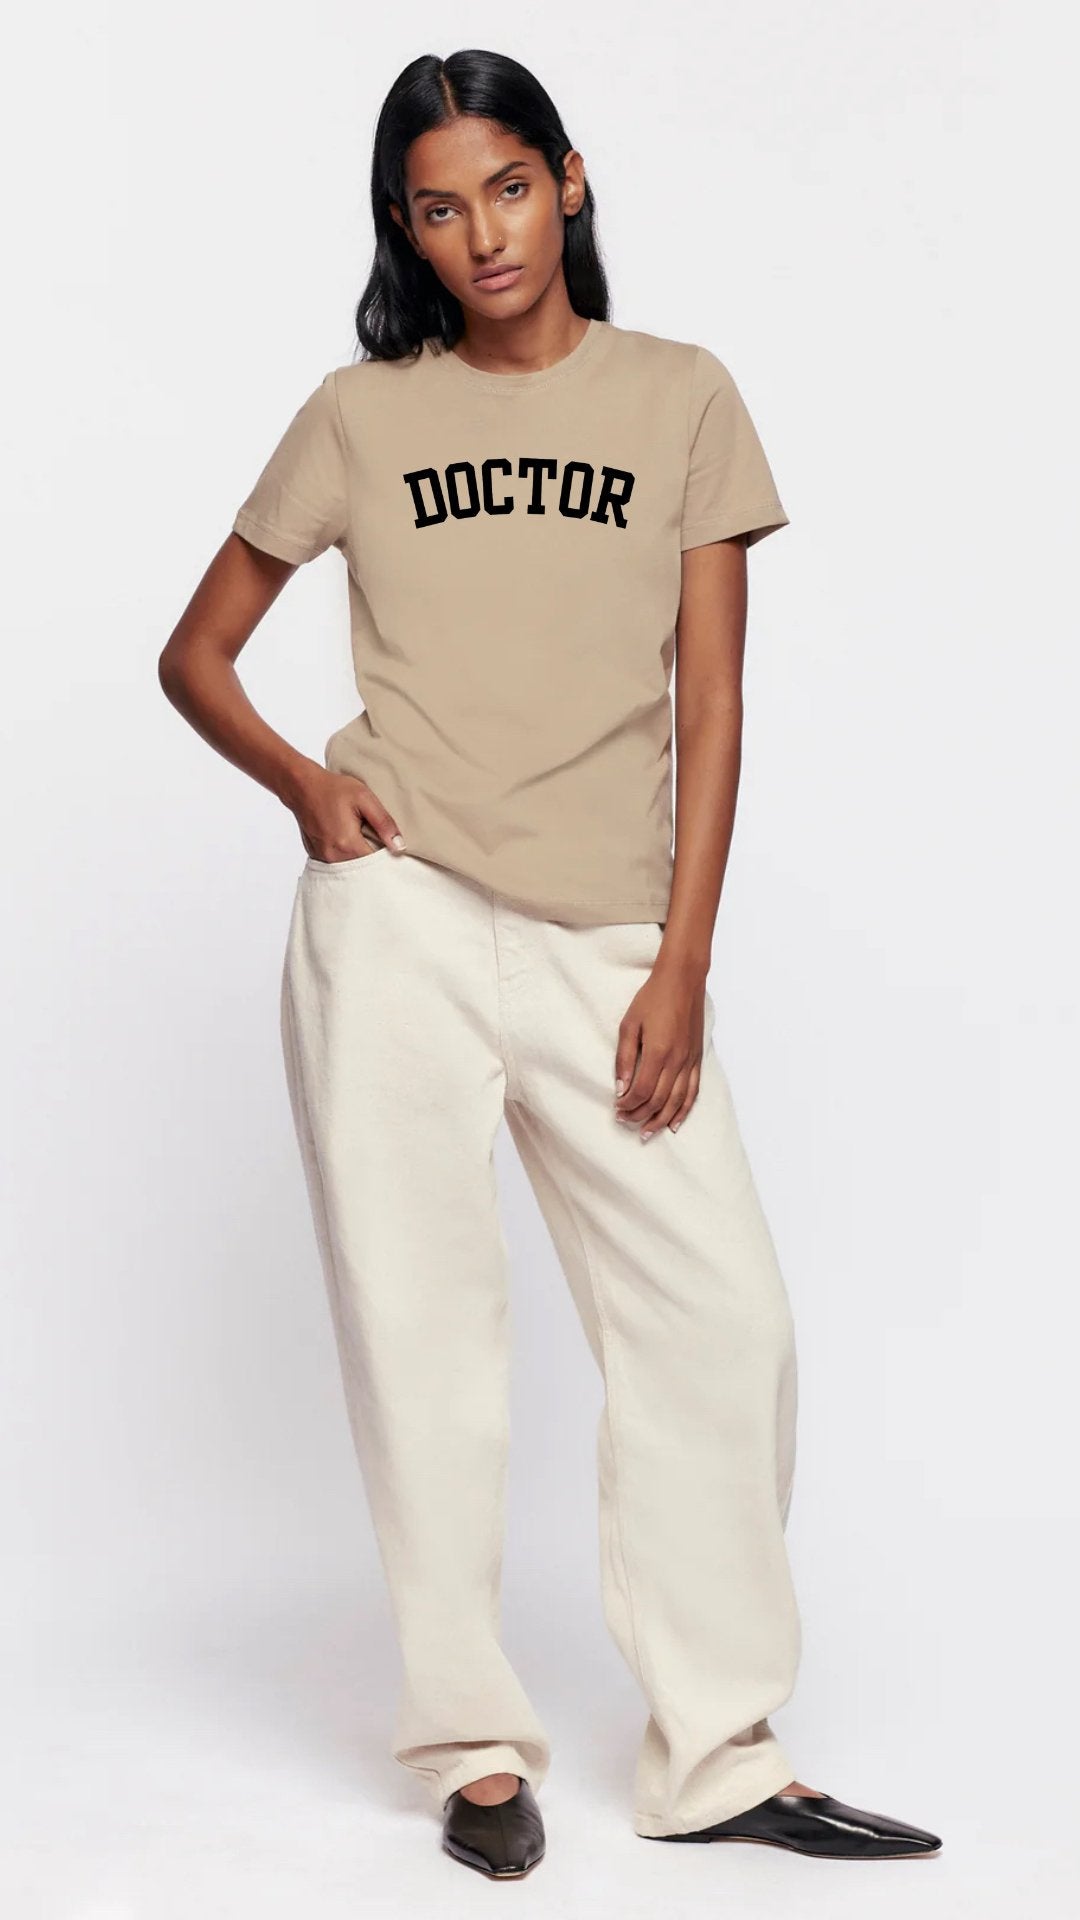 Big Doctor Energy Luxury Unisex T-shirt - The Woman Doctor